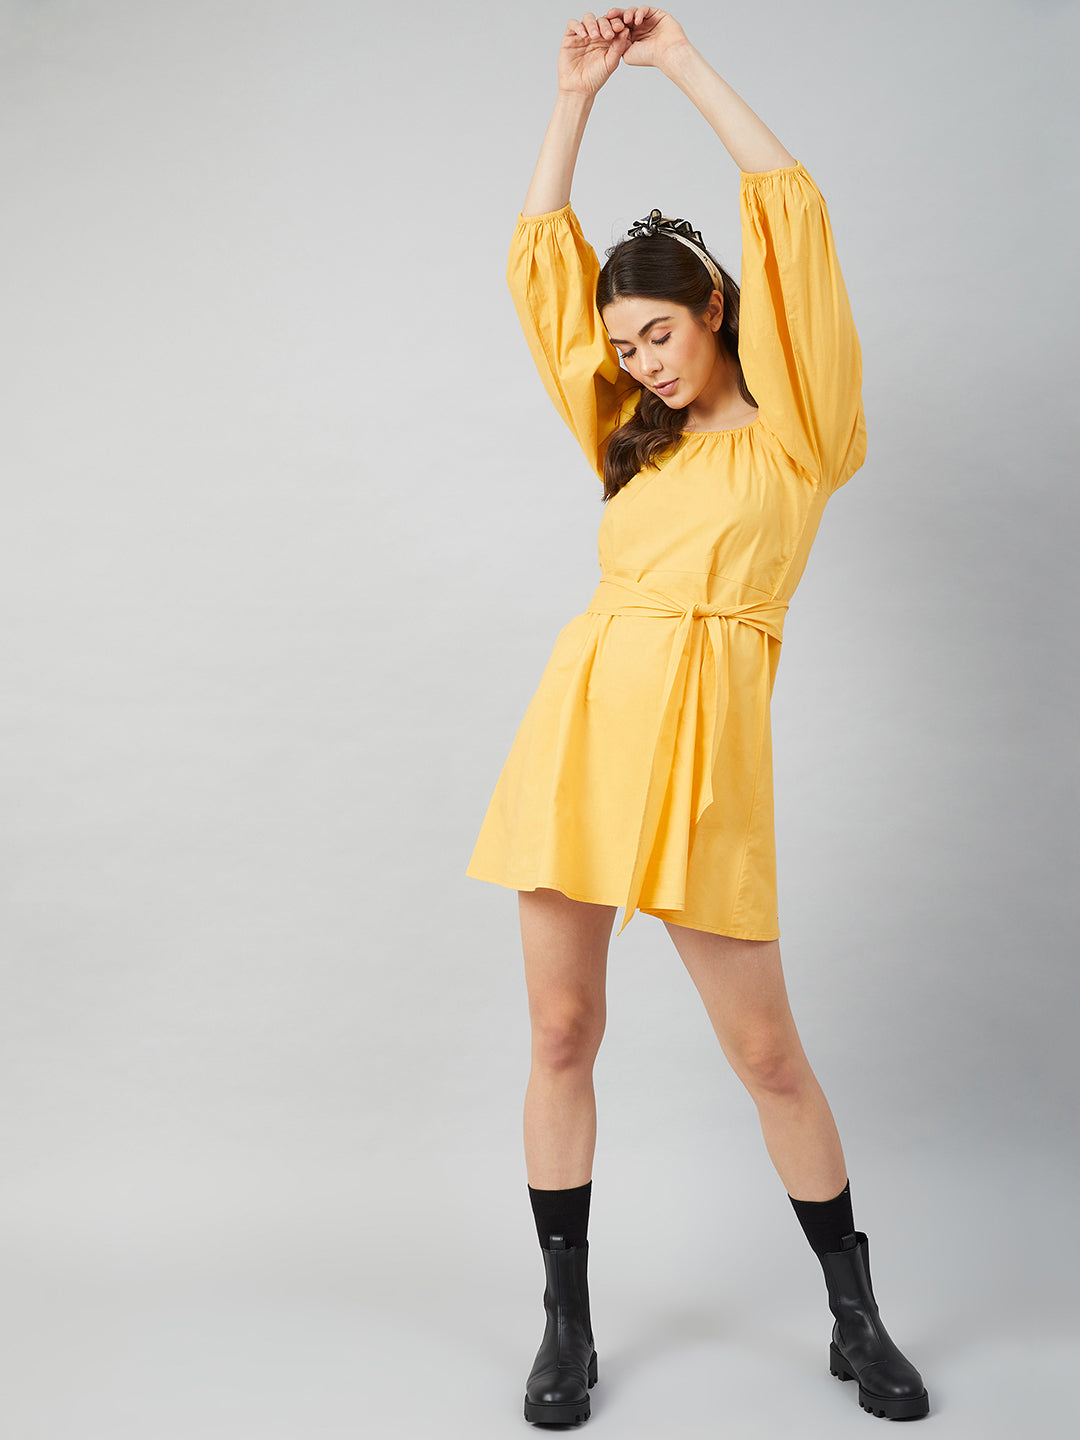 Athena Yellow cotton A-Line Dress - Athena Lifestyle